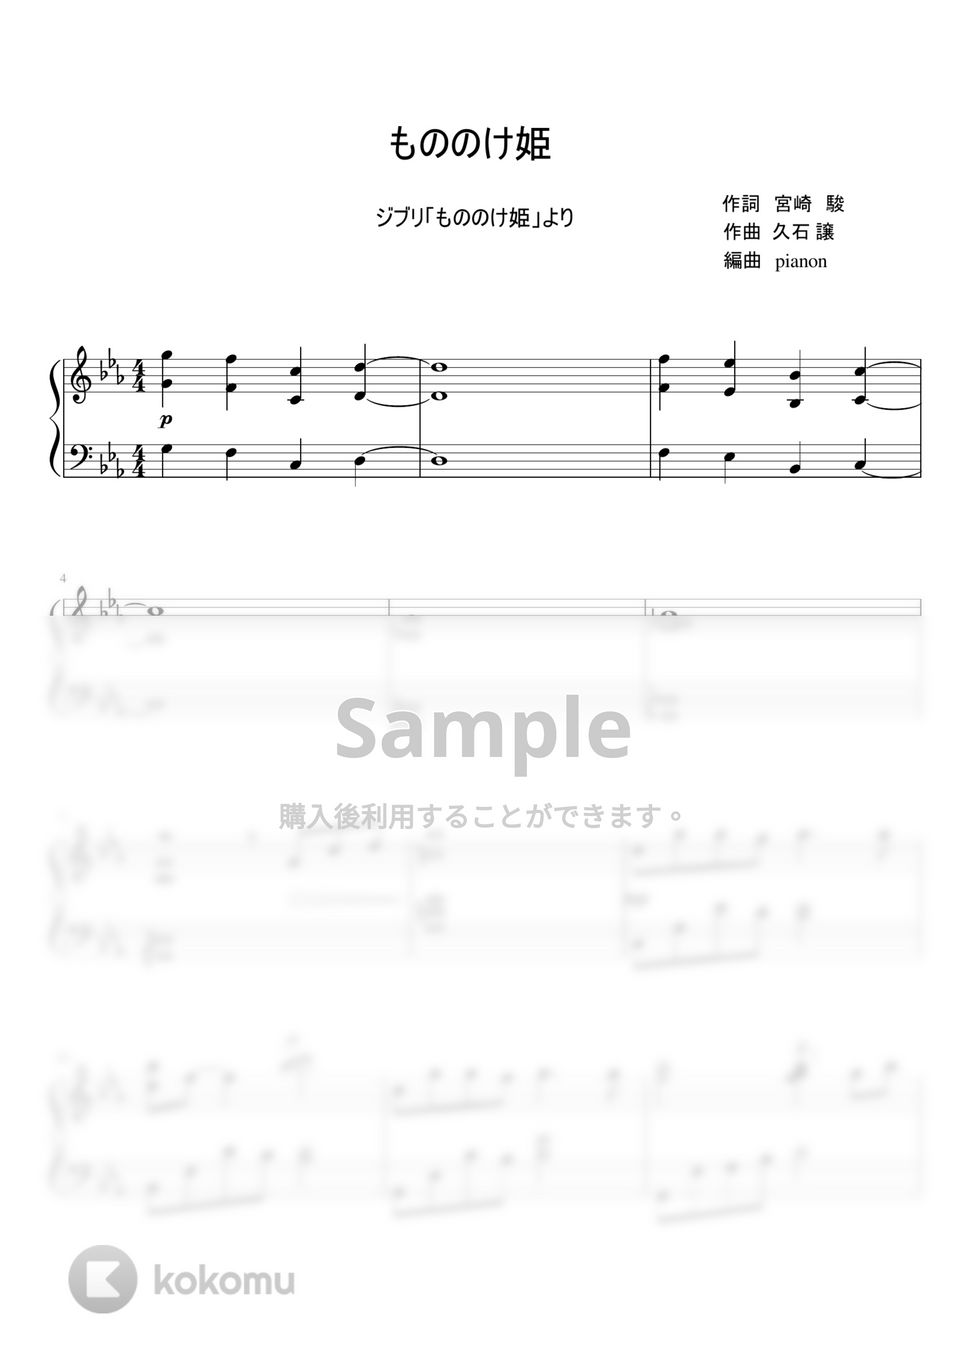 久石譲 - もののけ姫 (ピアノソロ / ピアノ中級) by pianon